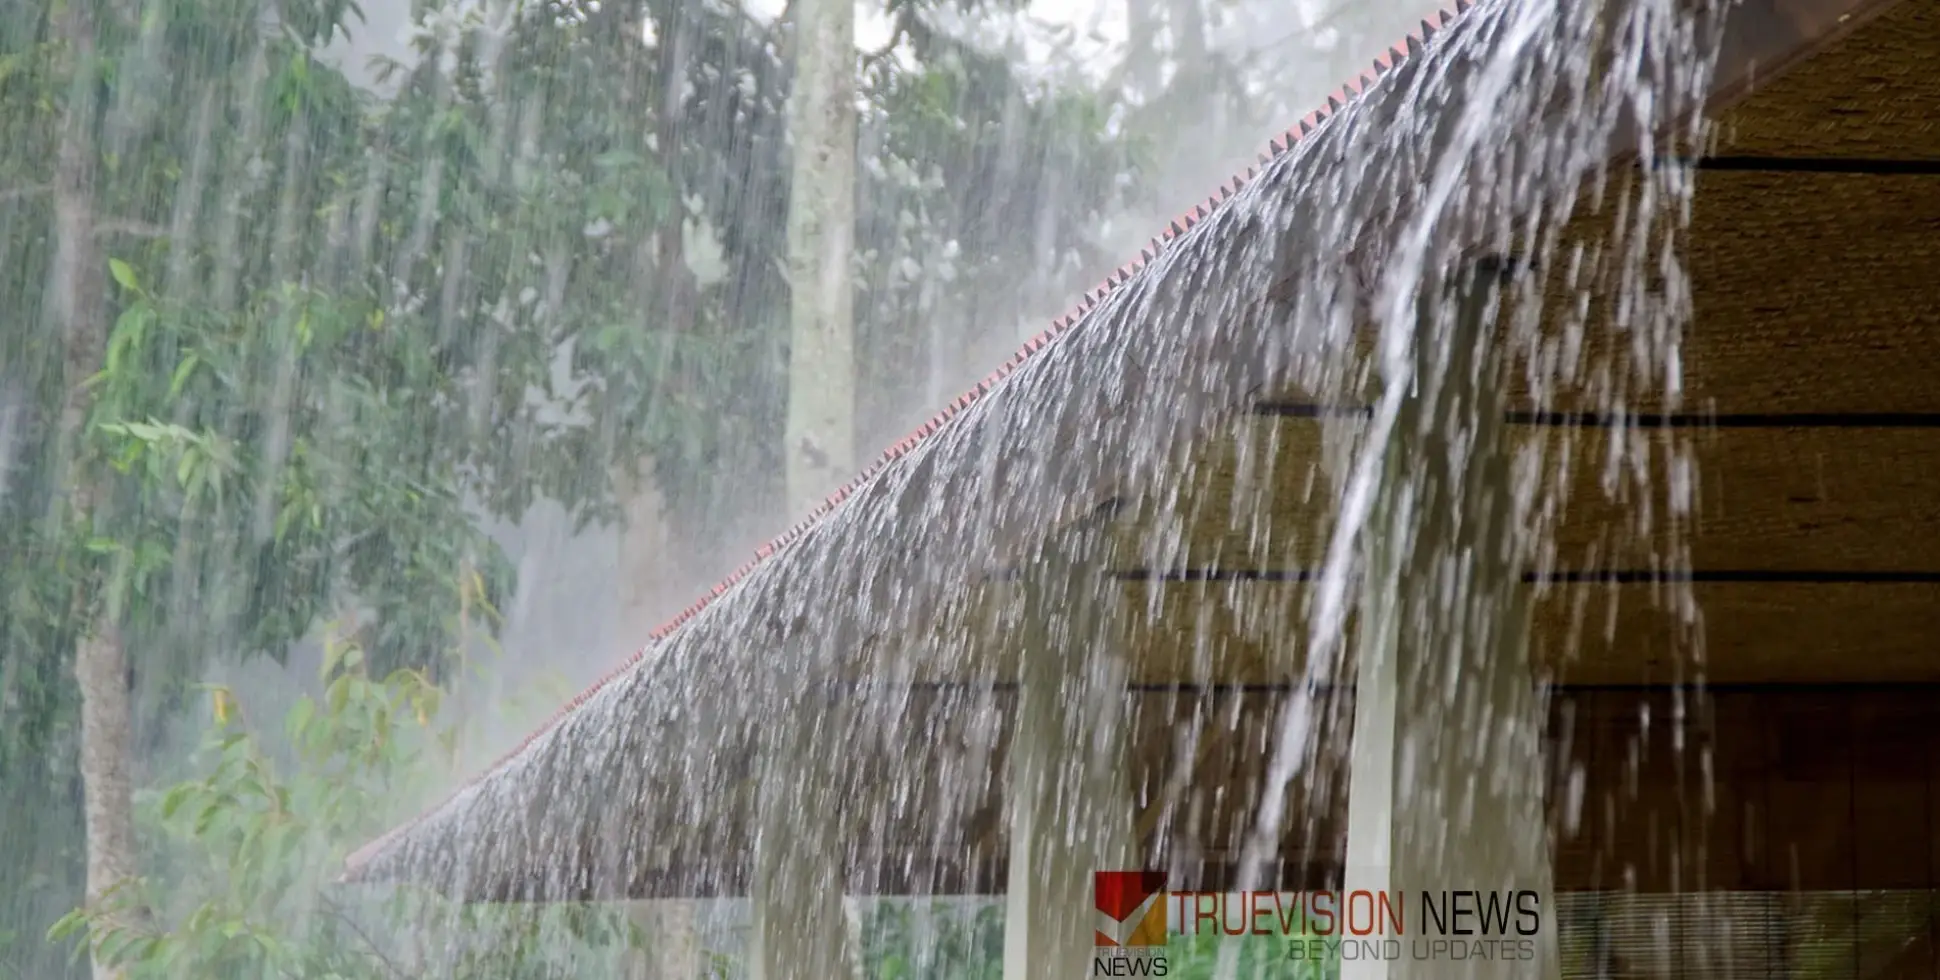 #rain|ന്യൂനമർദ പാത്തി: സംസ്ഥാനത്ത് ബുധനാഴ്ച വരെ മഴക്ക് സാധ്യത